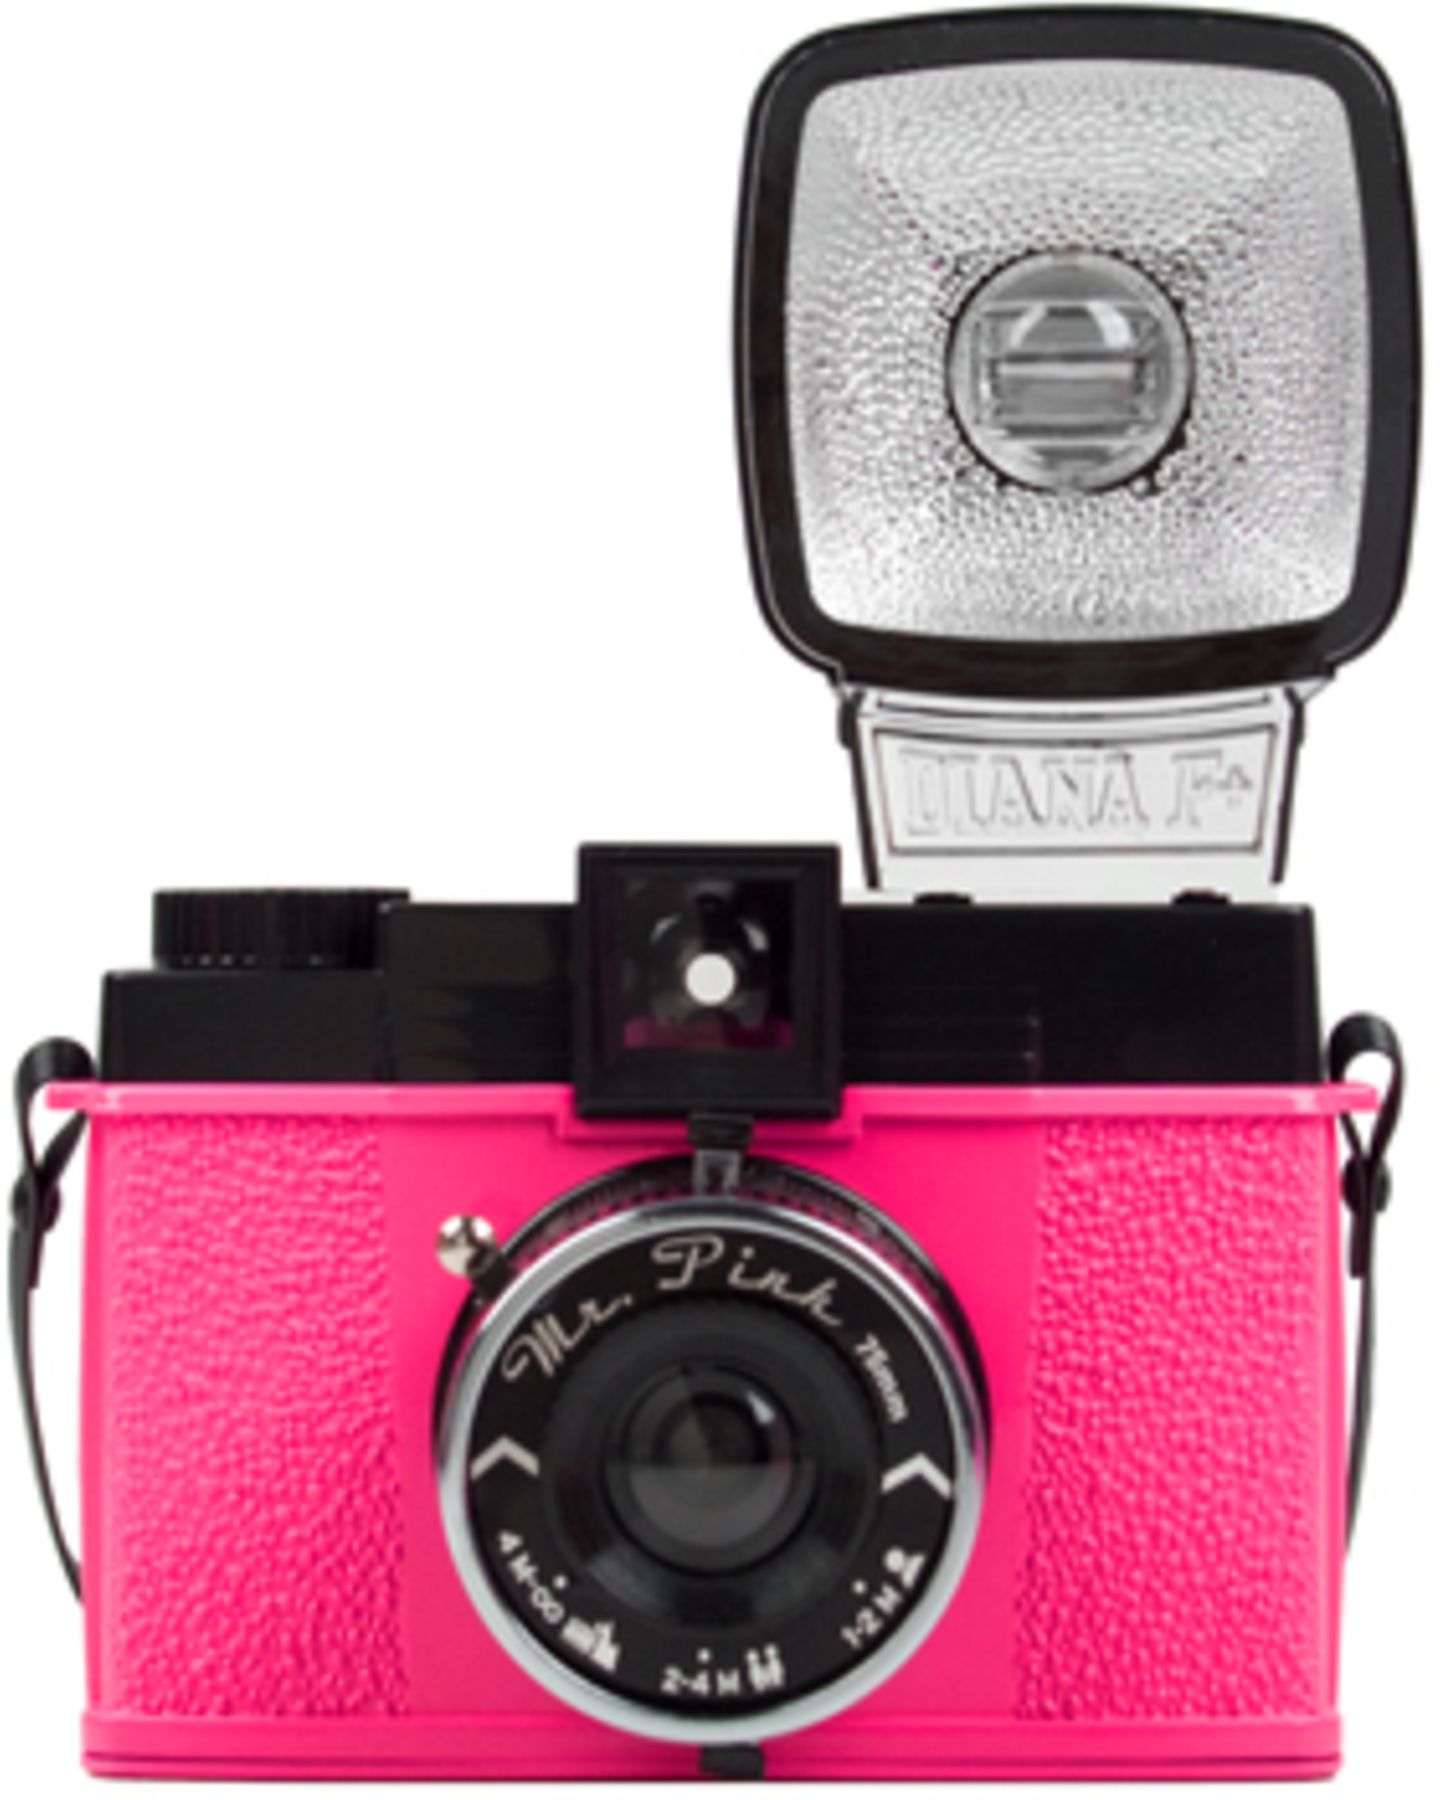 Die LOMO Mr. Pink Diana fällt mit knalliger Farbe und Retro-Optik sofort ins Auge. Sollte jeder Kameraliebhaber unbedingt in seiner Sammlung haben! Um 120 Euro bei fredflare.